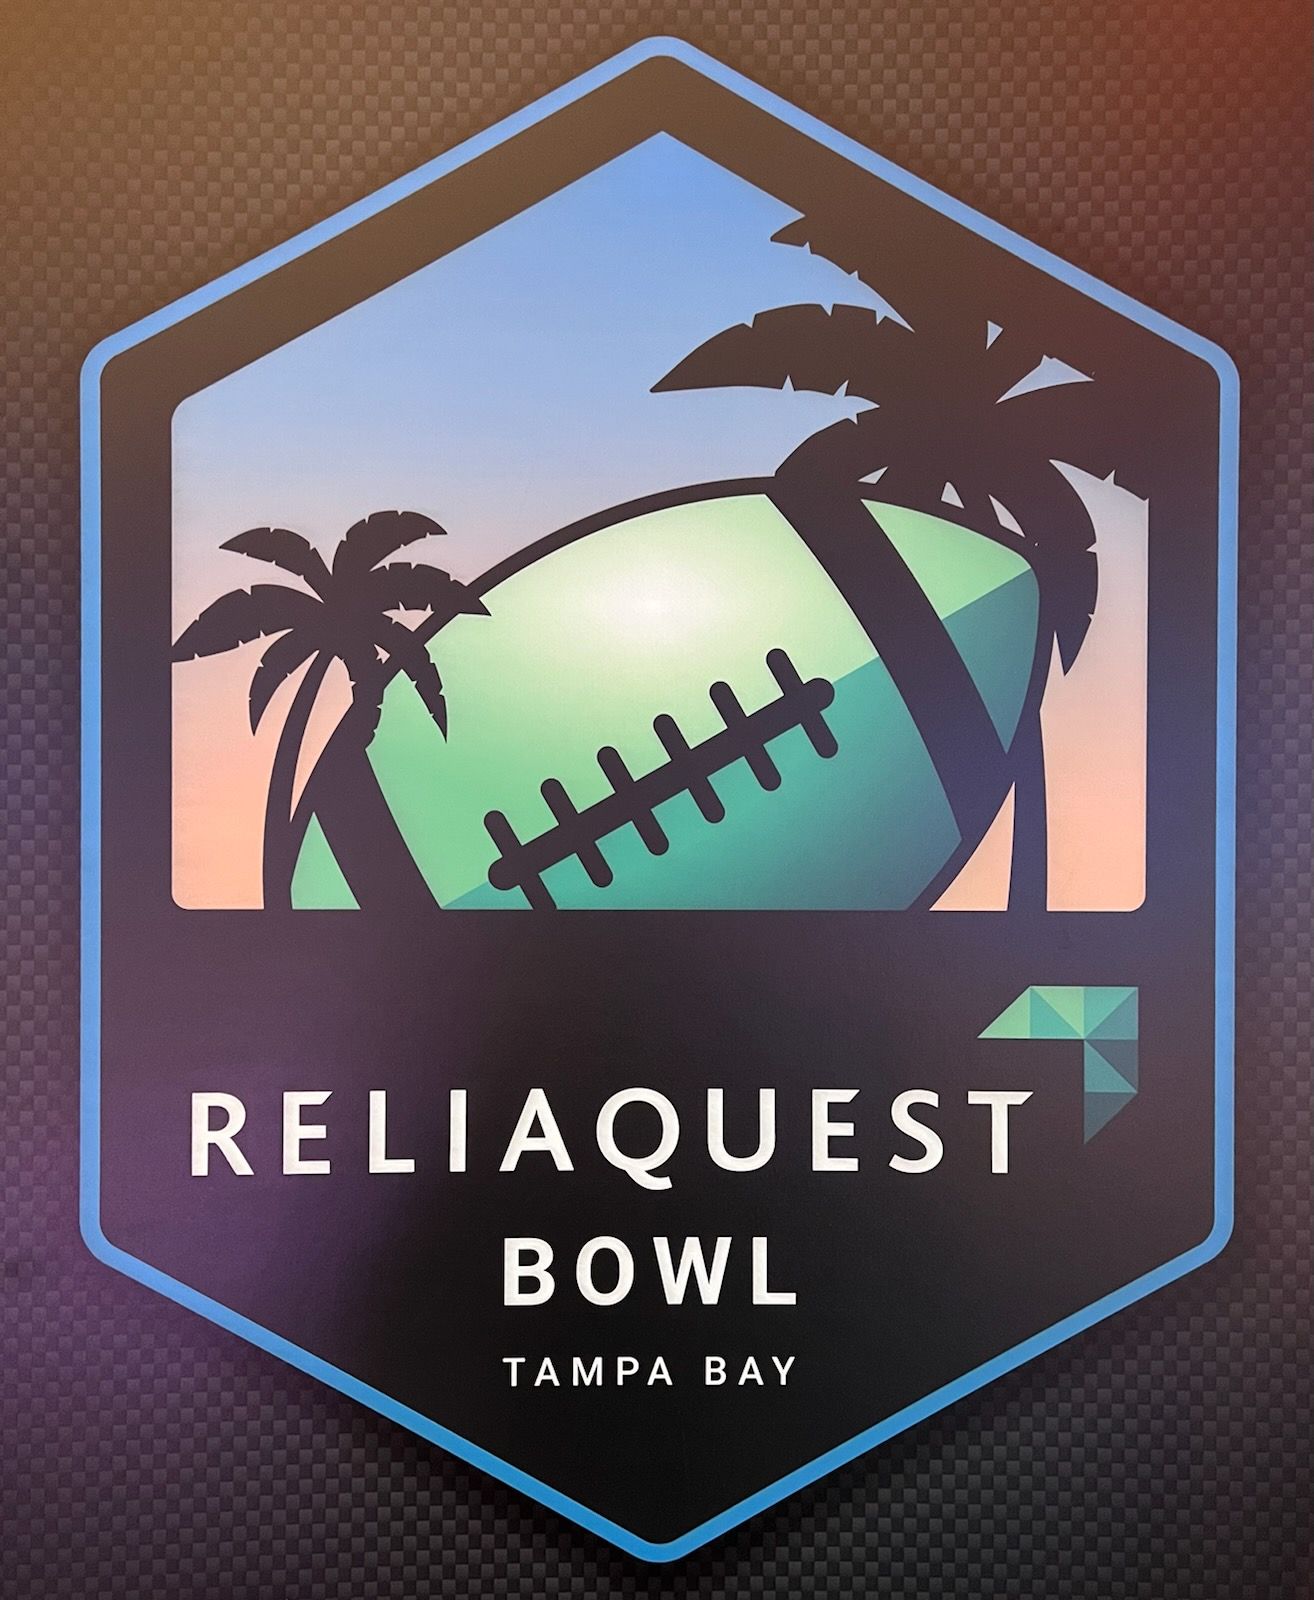 Tampa Bay Bowl announces Reliaquest as title sponsor (PHOTOS)